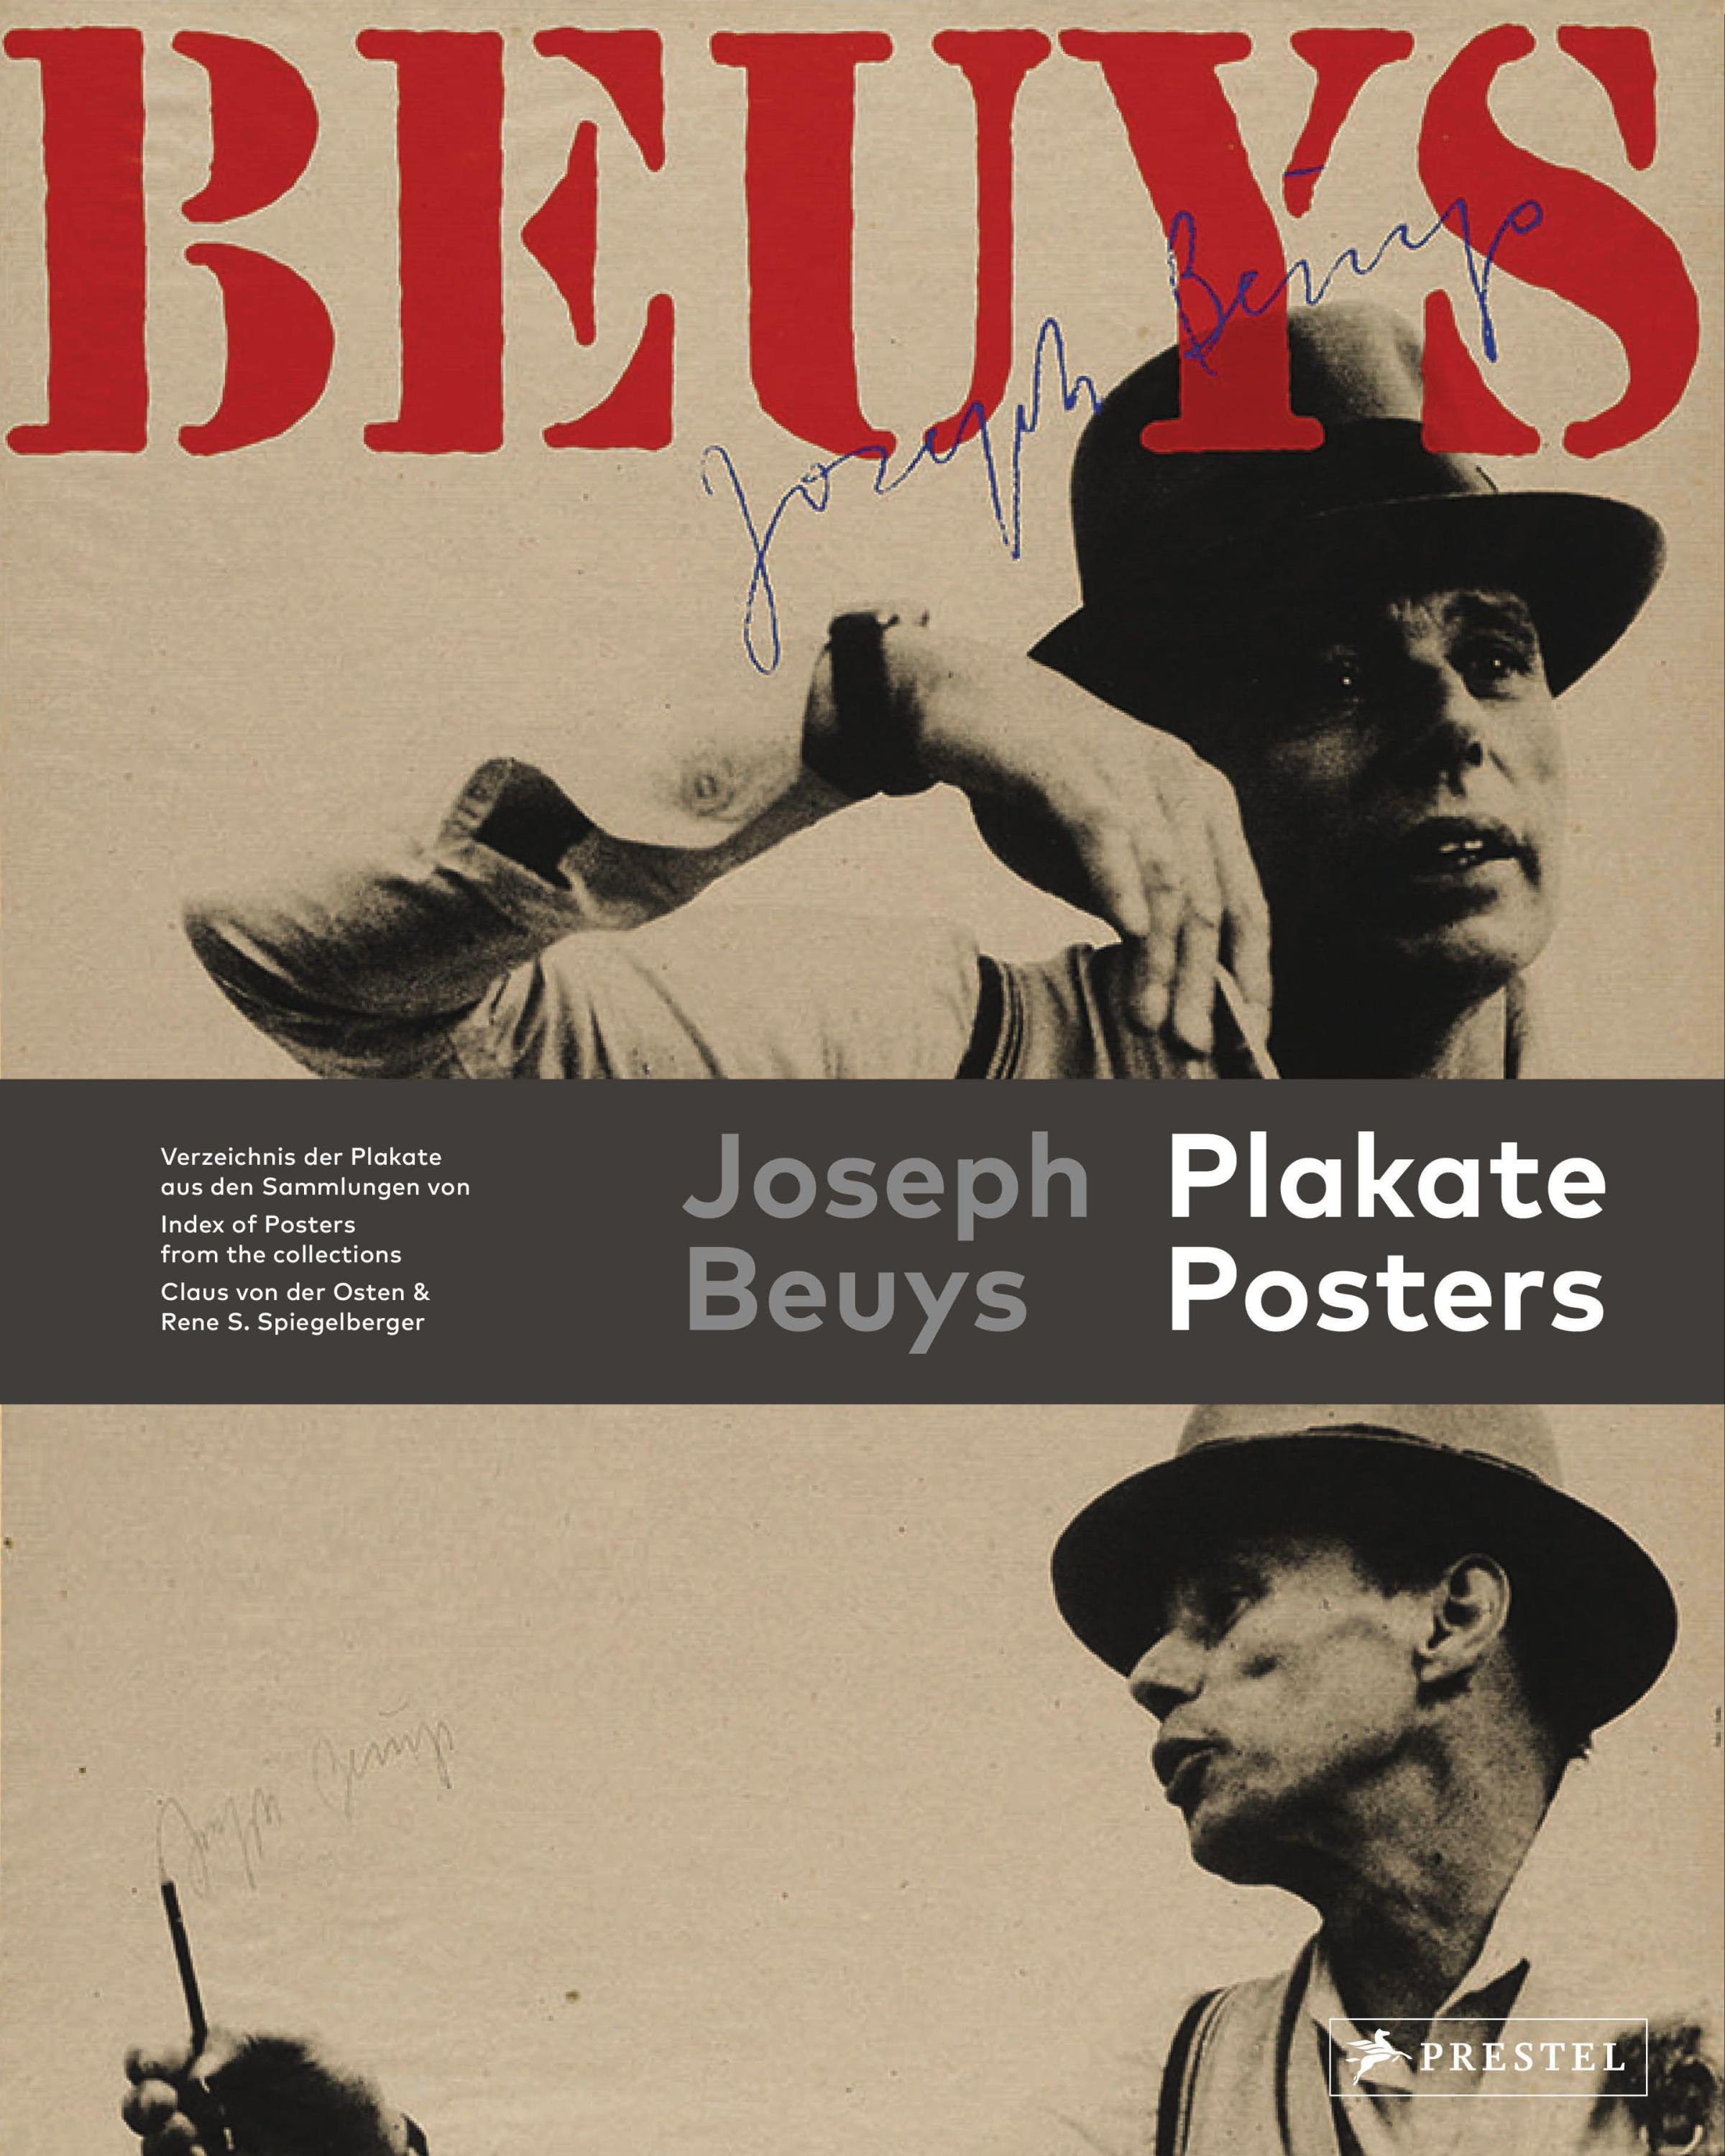 Joseph Beuys Fussbodenzeichnung Herzogstrasse 79 Poster Kunstdruck Bild 30x40cm